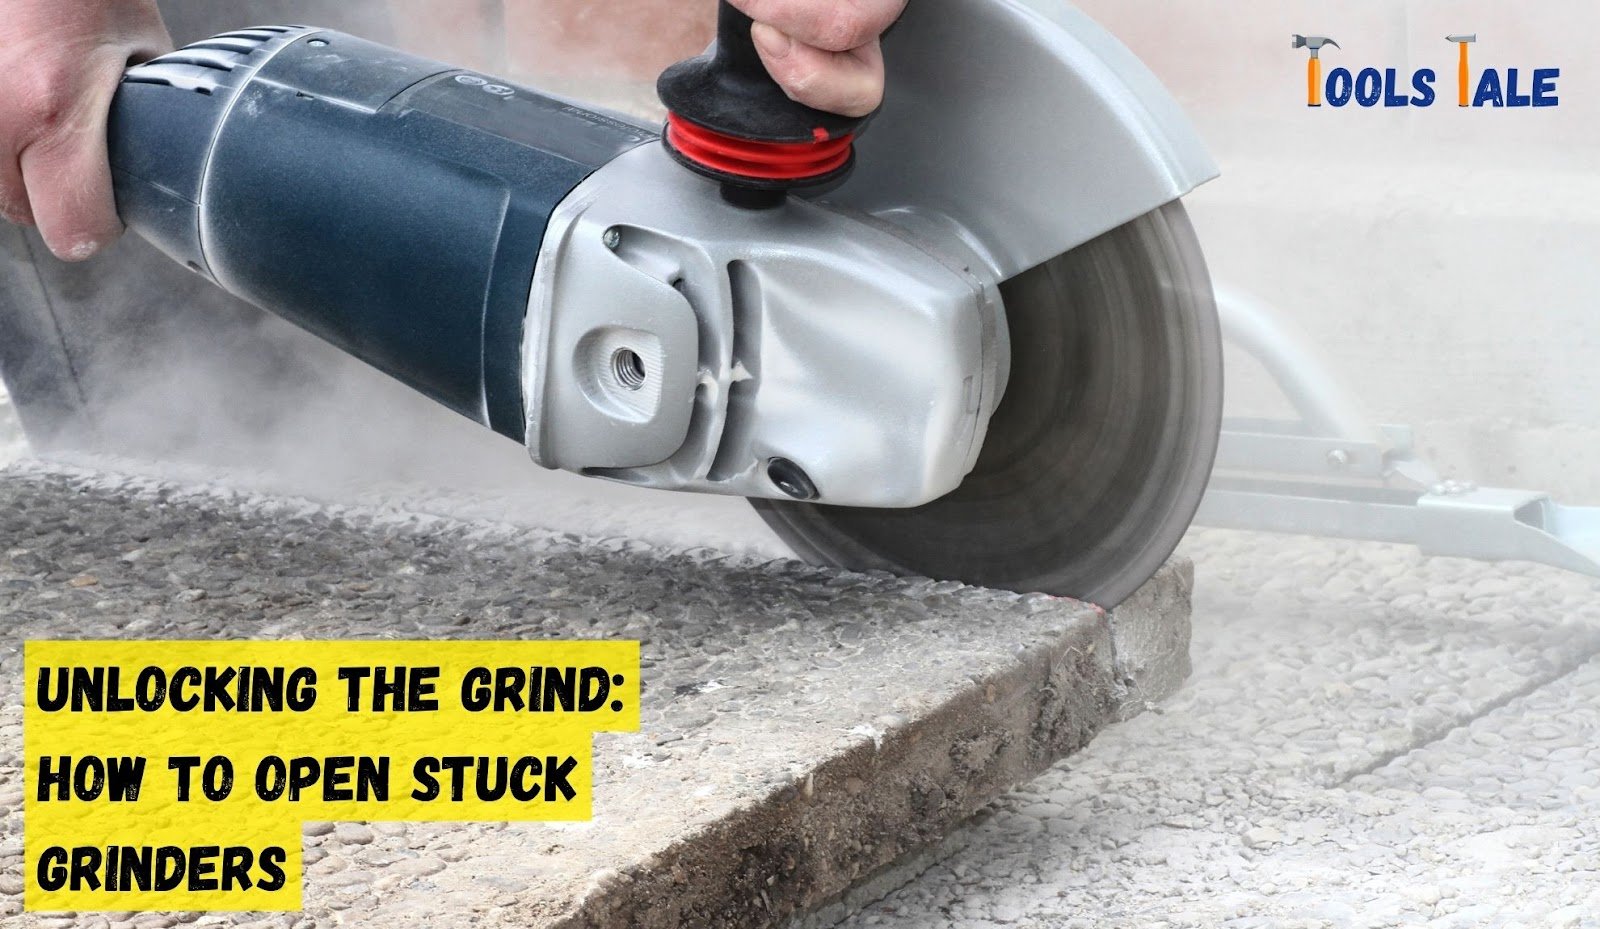 How to open stuck grinder